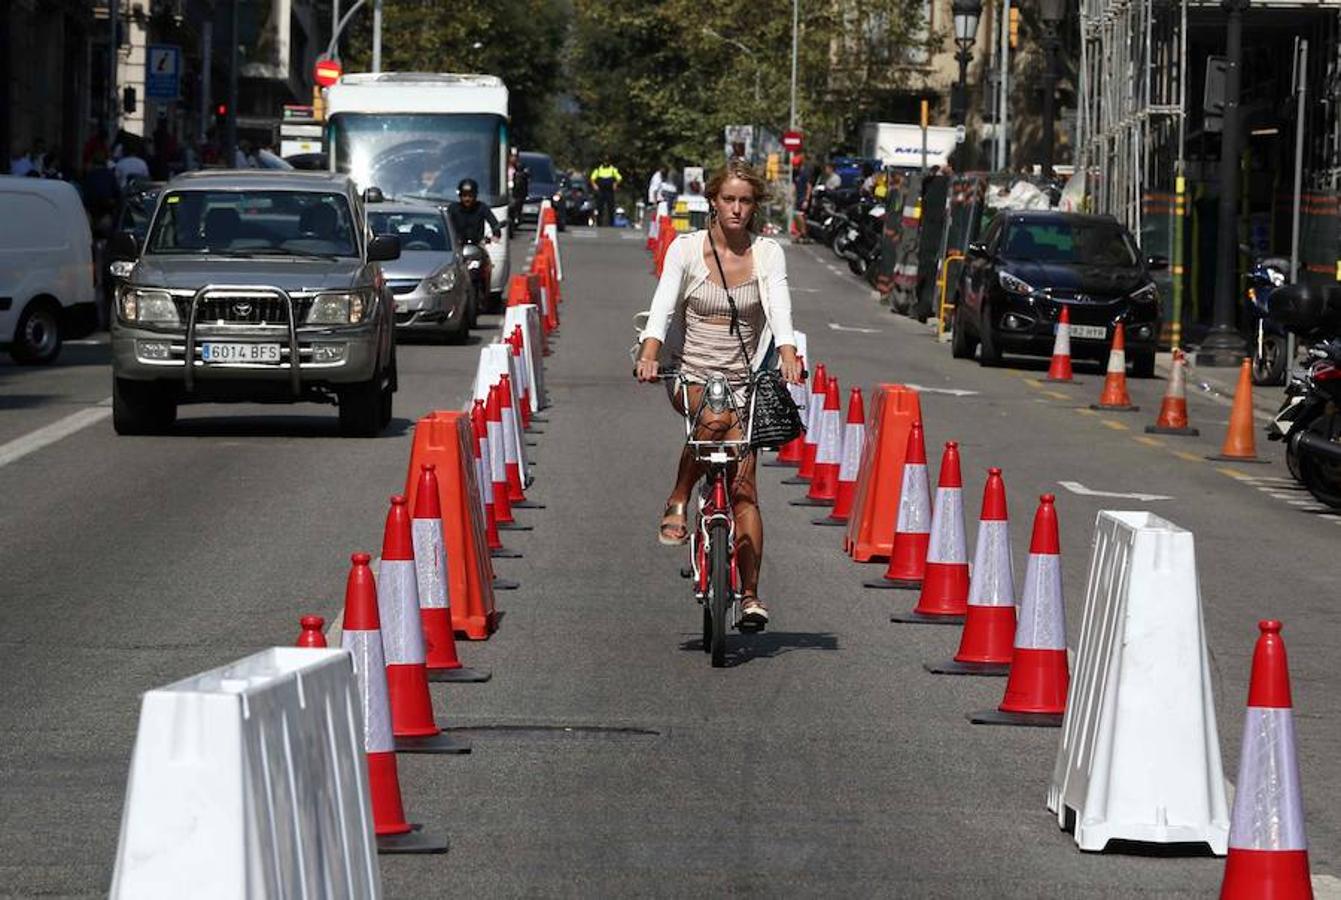 Una ciclista circula en un carril de la carretera adaptado para el «Día sin coches» en la ciudad de Barcelona